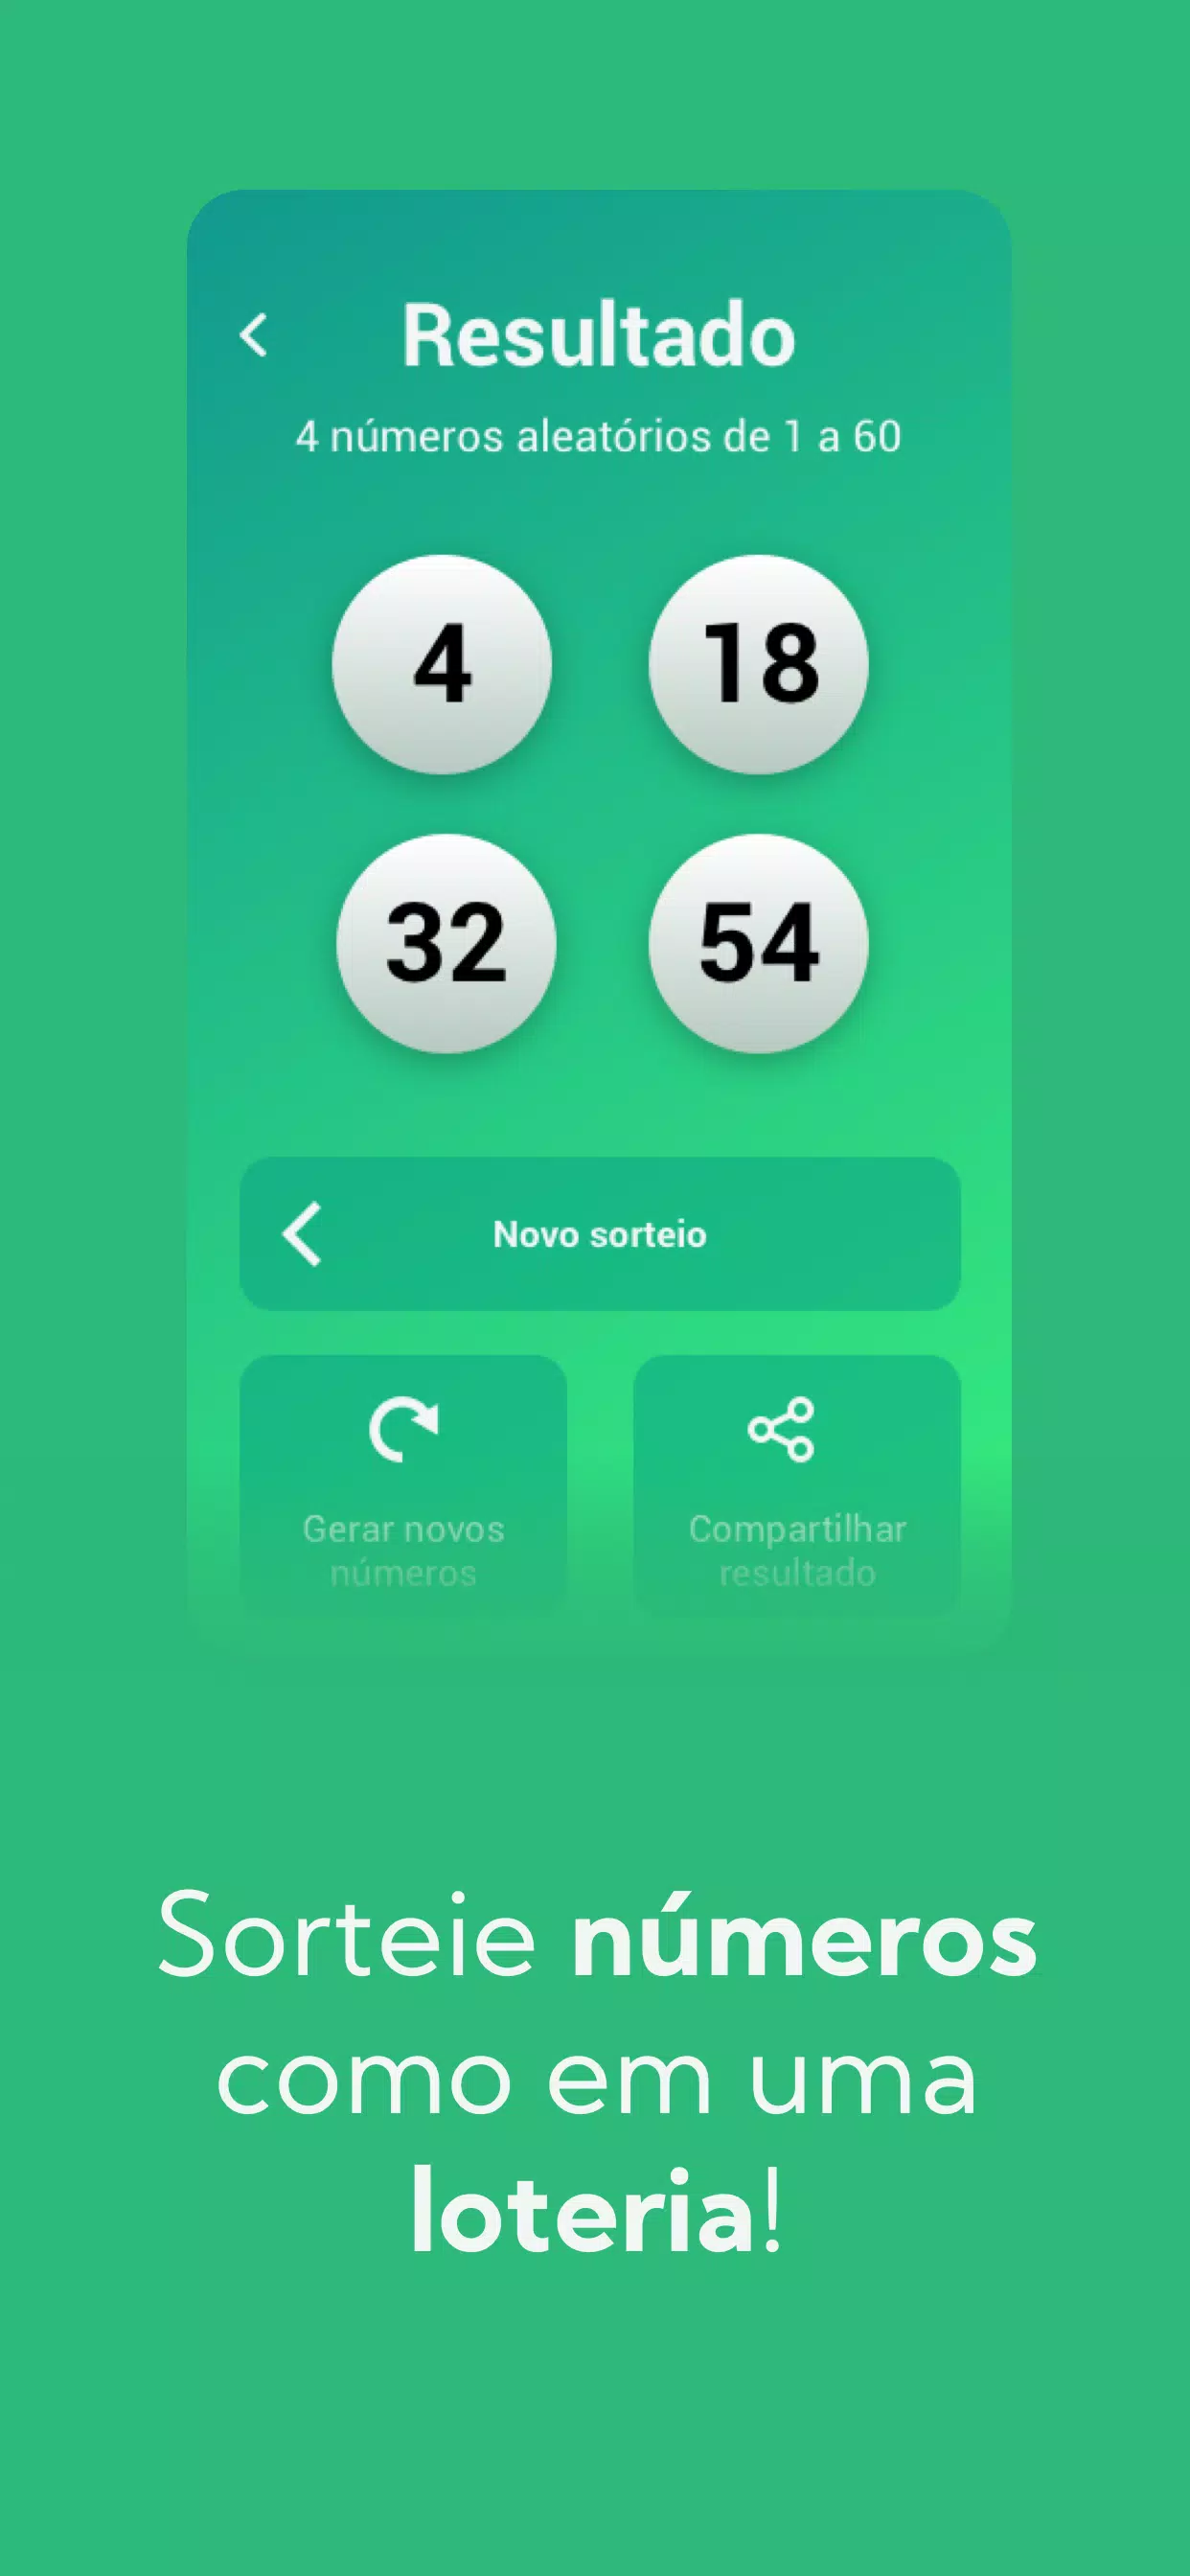 Apps de sorteio: 6 opções para sortear nomes e números no celular